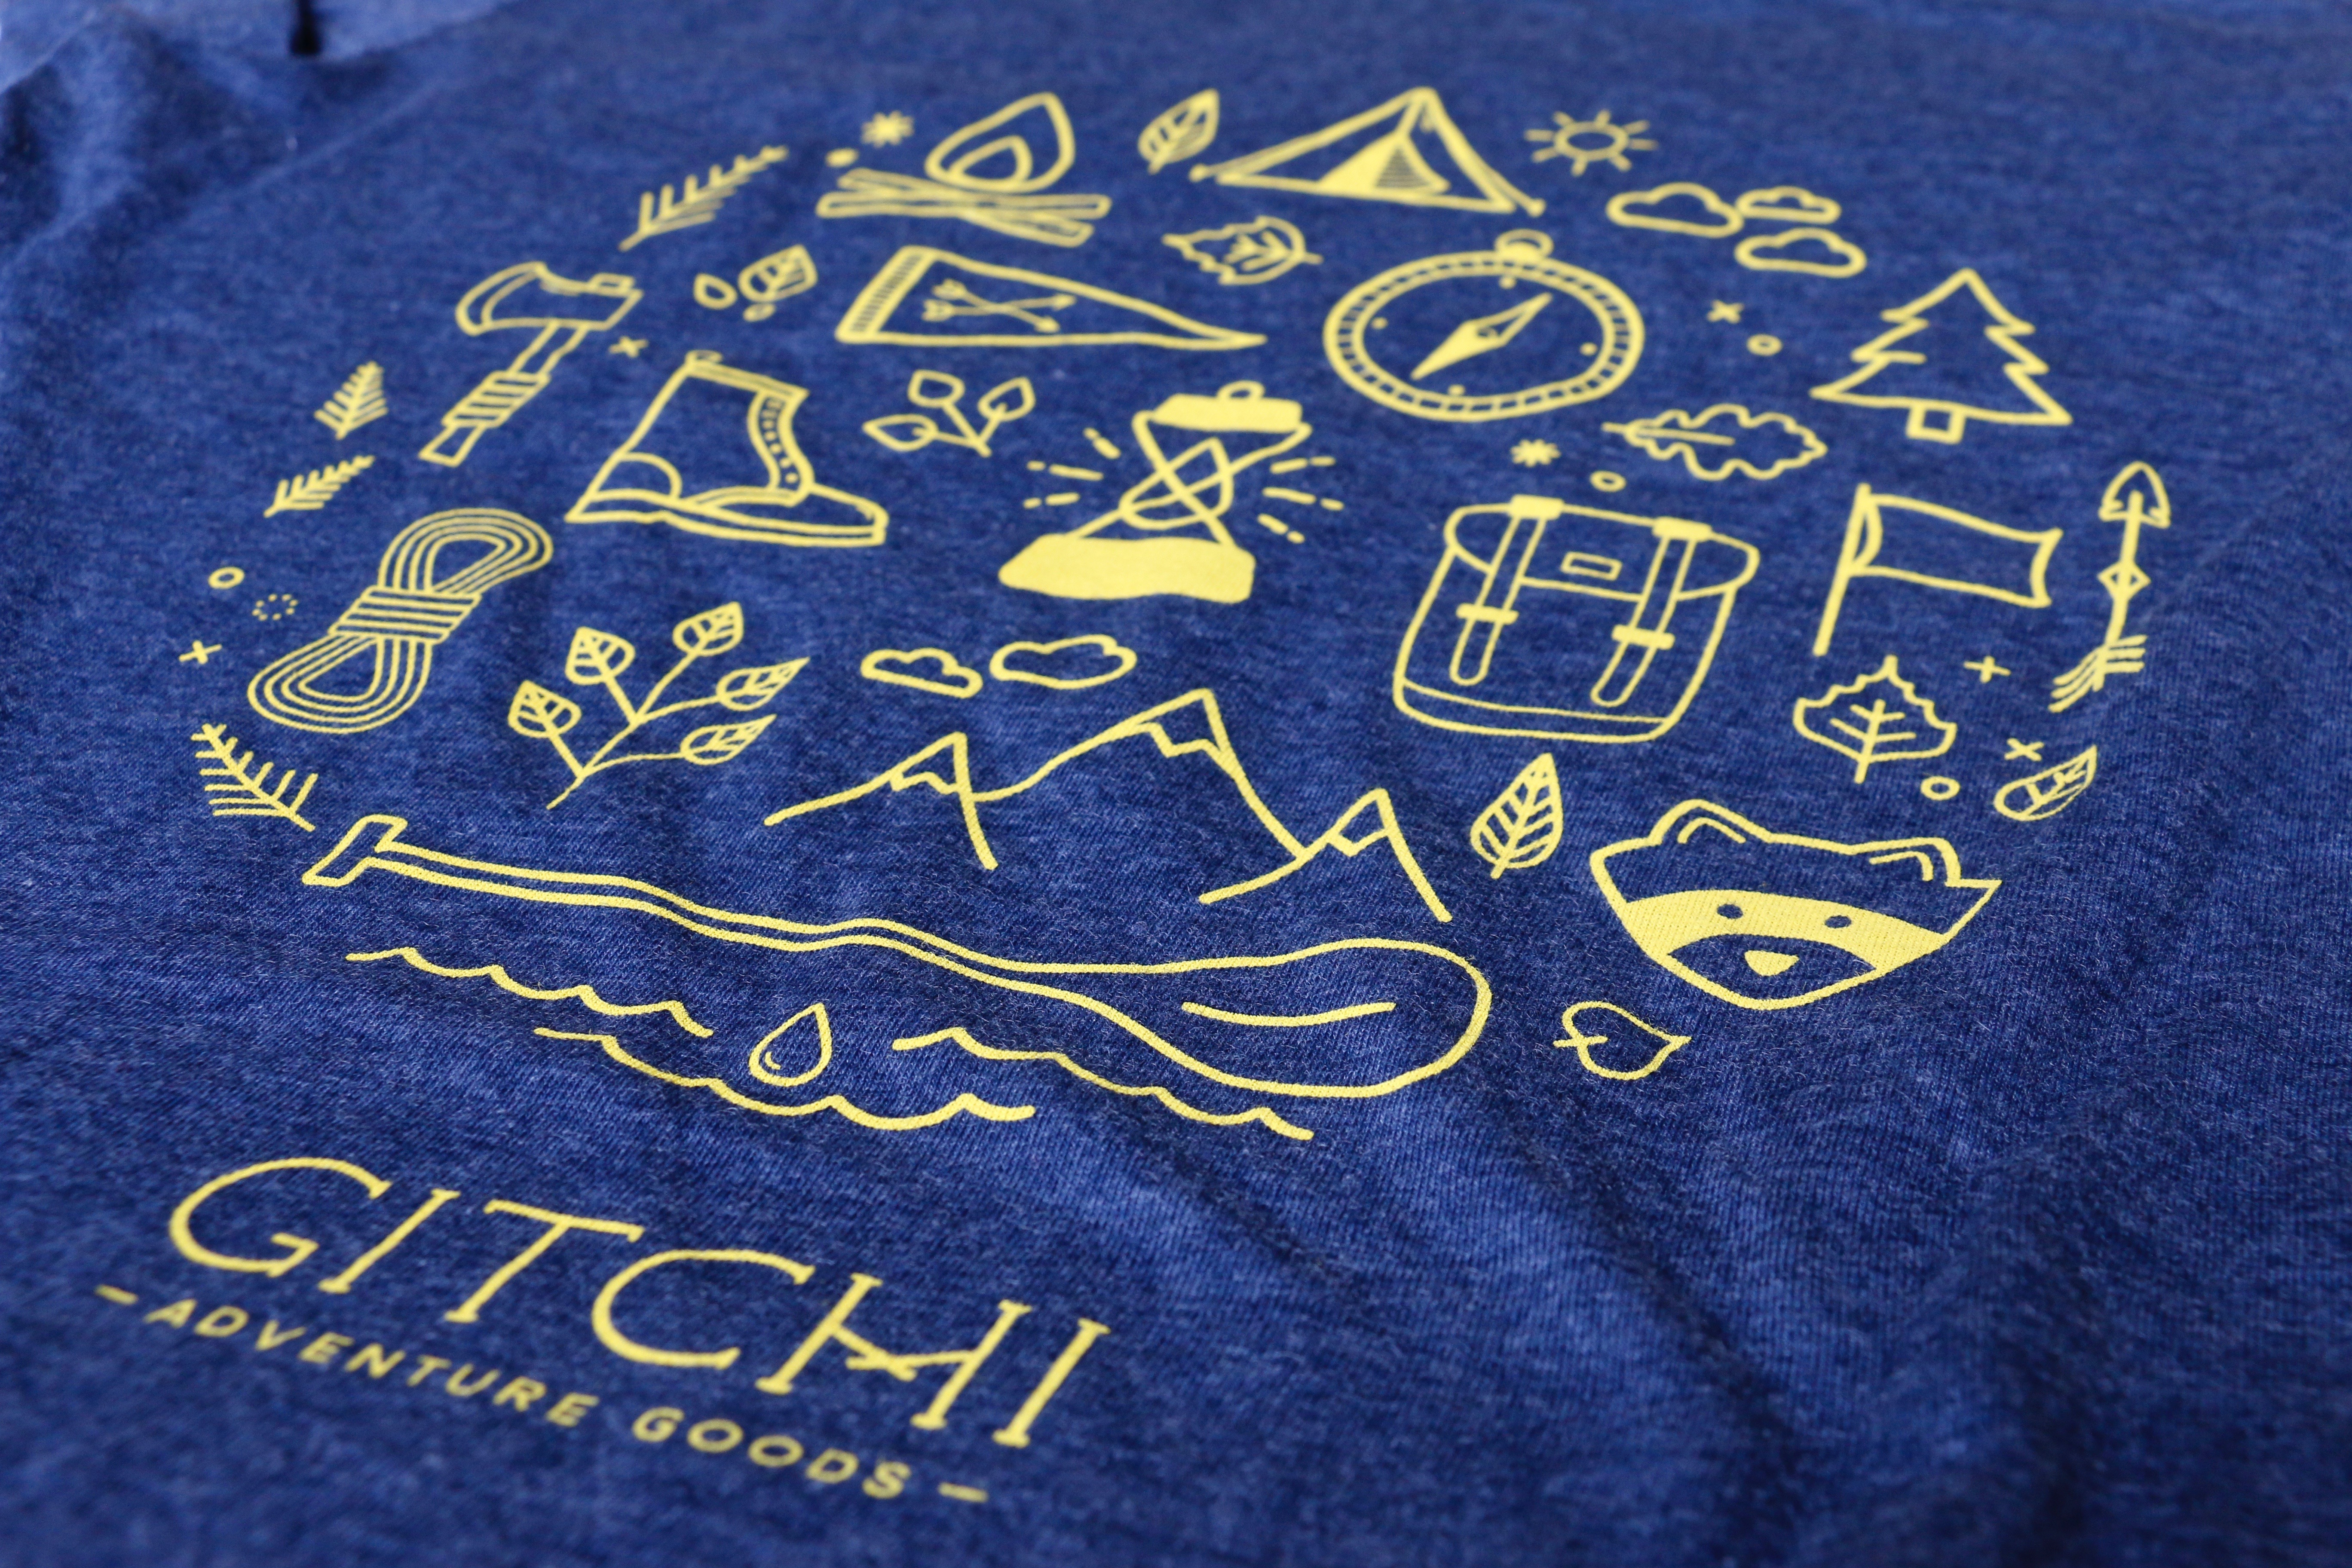 Gitchi Adventure Goods 2016 design